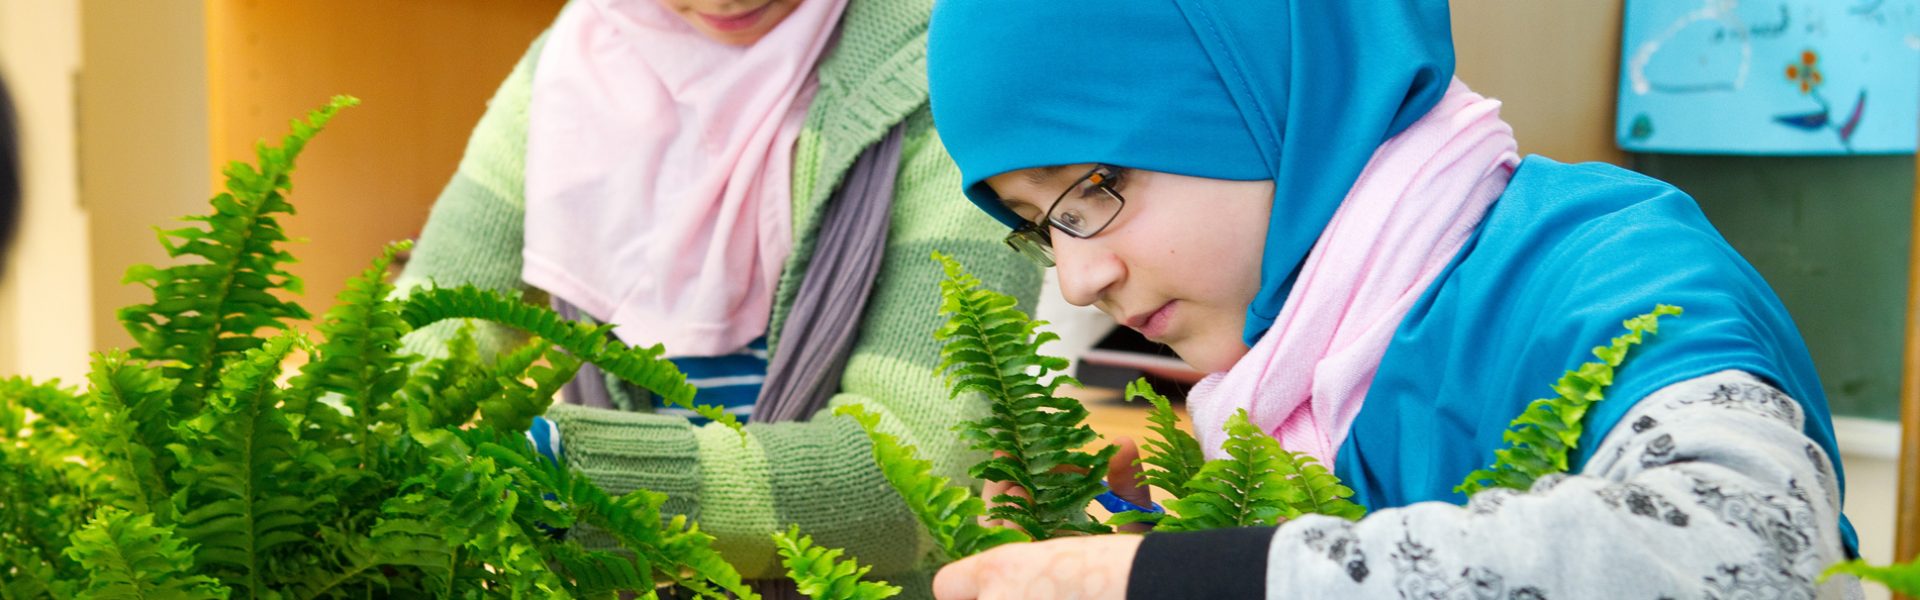 Grønt innemiljø – norsk forskning på planter i innemiljø i klasserommene